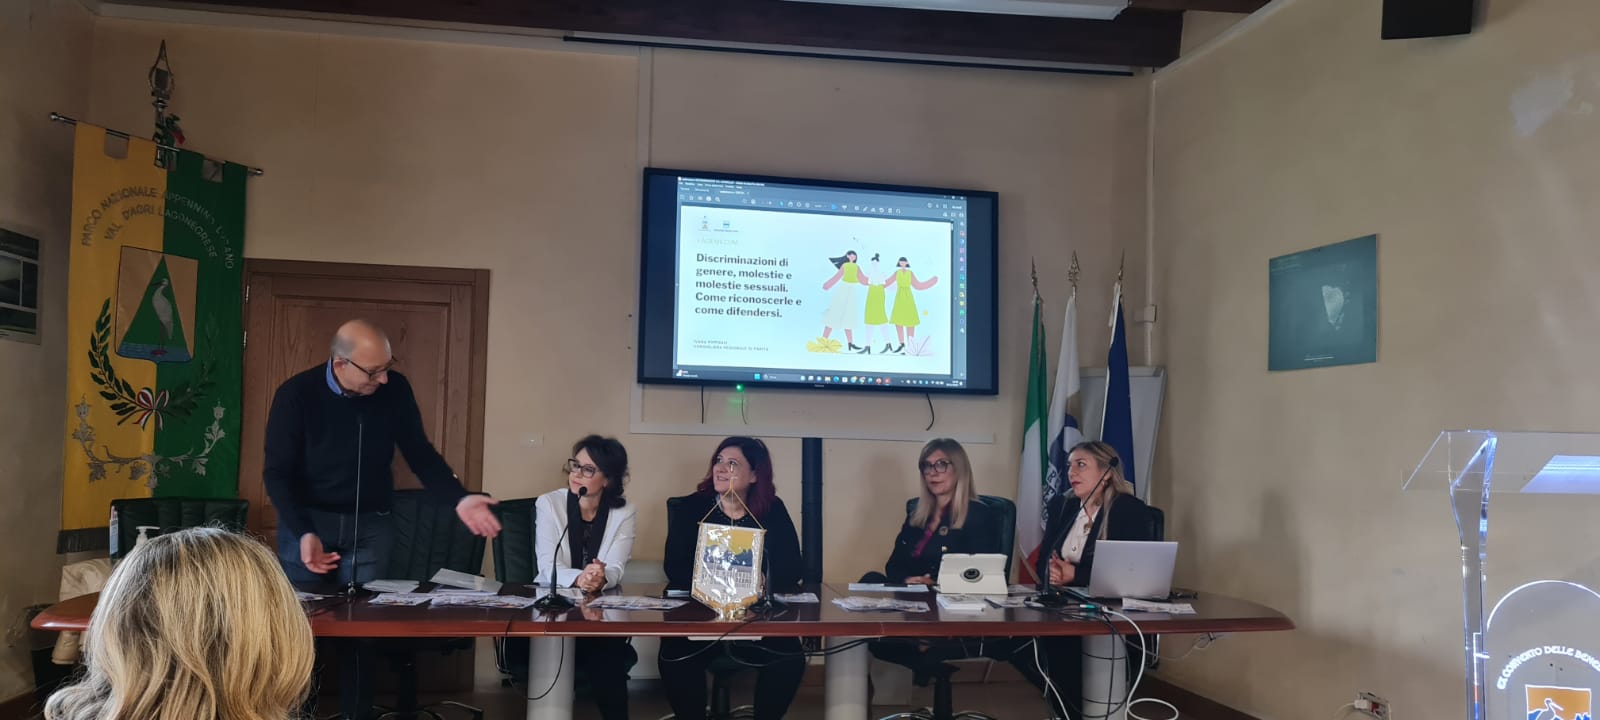 Il Parco Appennino Lucano e la Consigliera Regionale di parità, insieme per dare valore alle politiche di genere e ragguingere i target dell'obiettivo 5 dell'AGENDA 2030 ONU